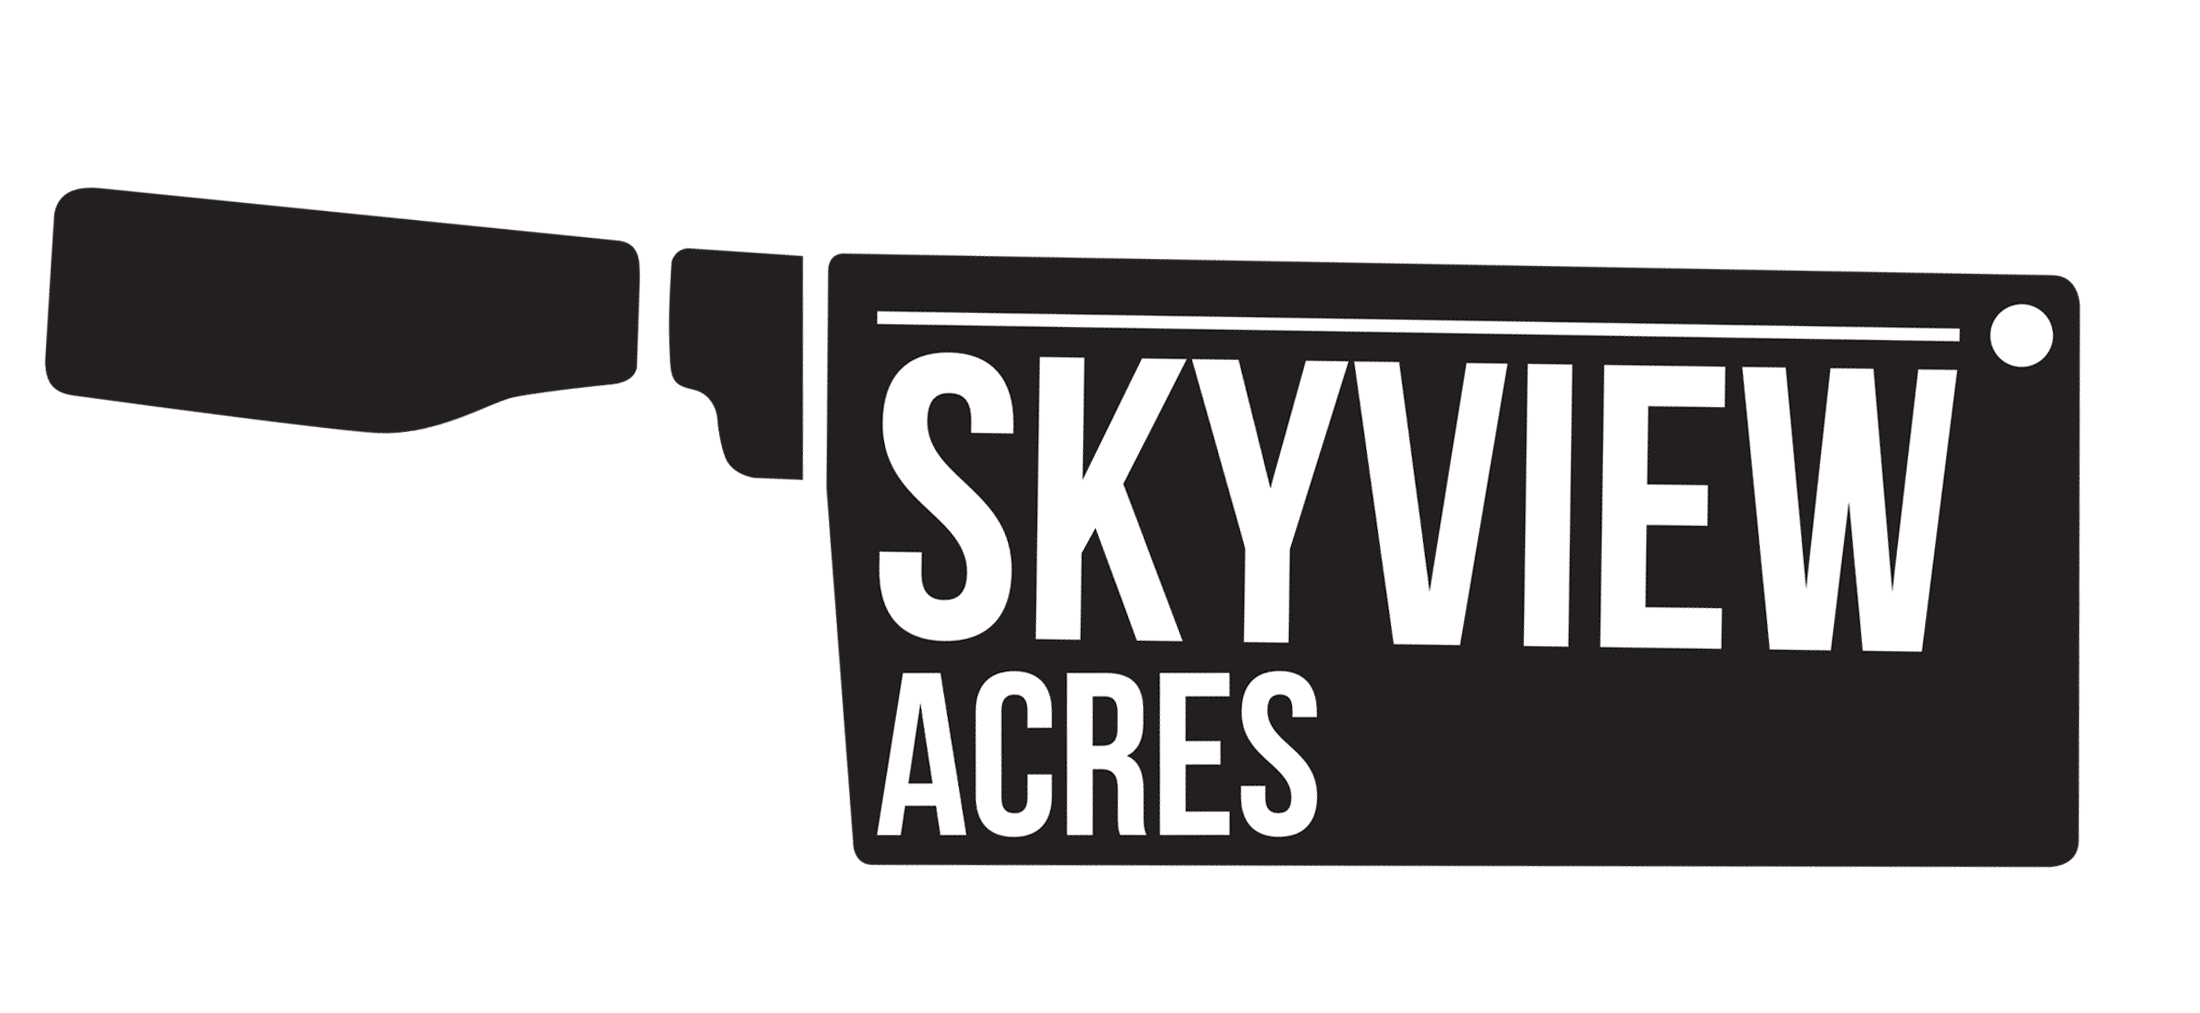 Skyview Acres